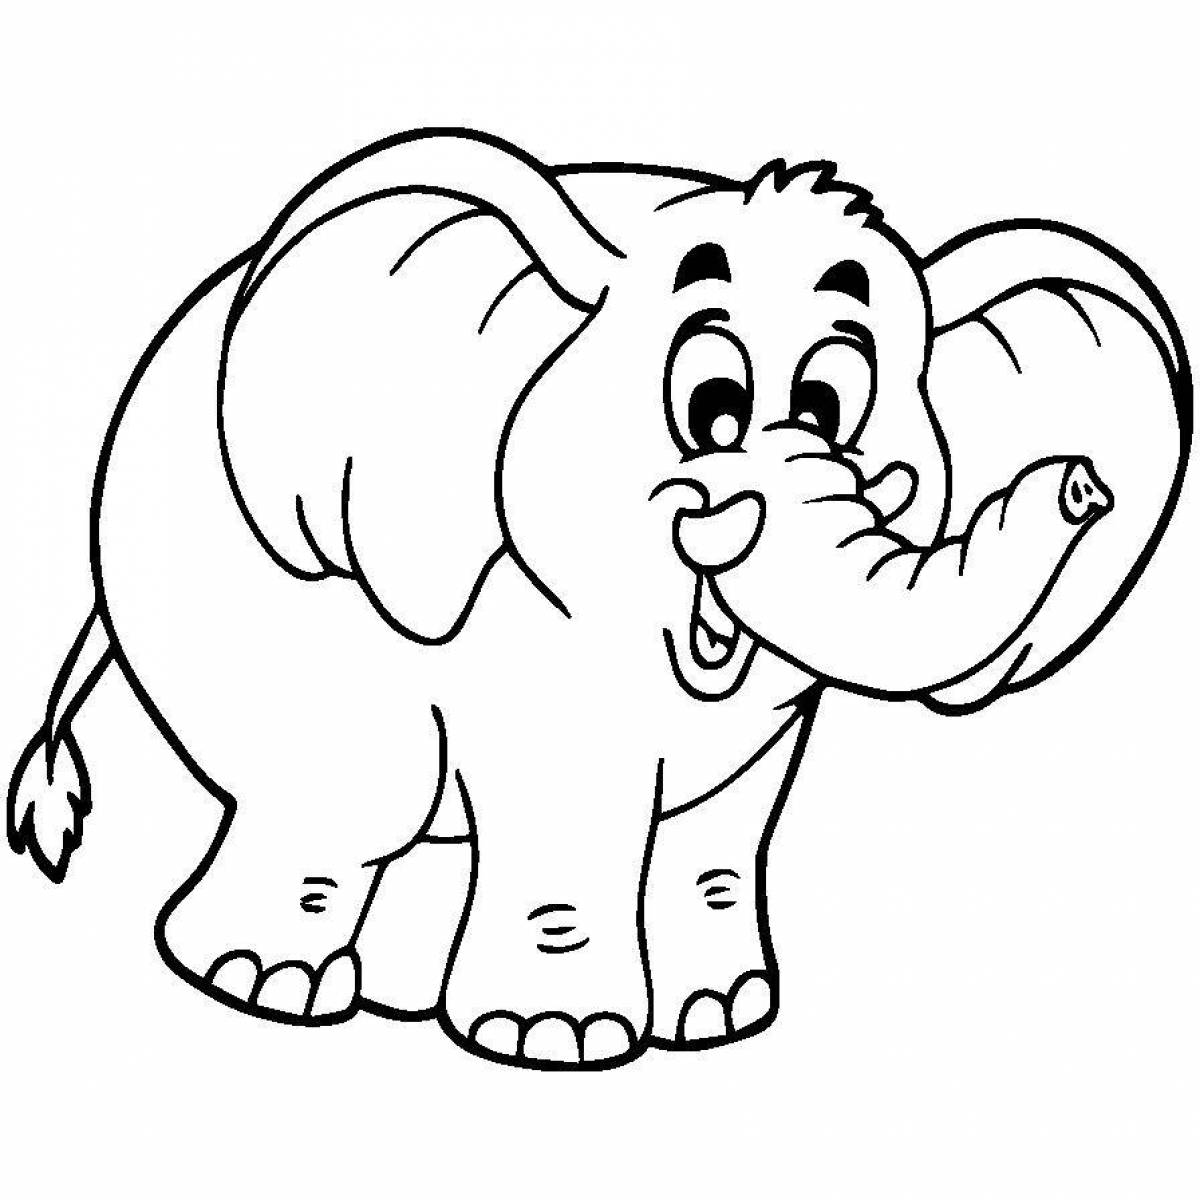 Роскошная раскраска с изображением слона